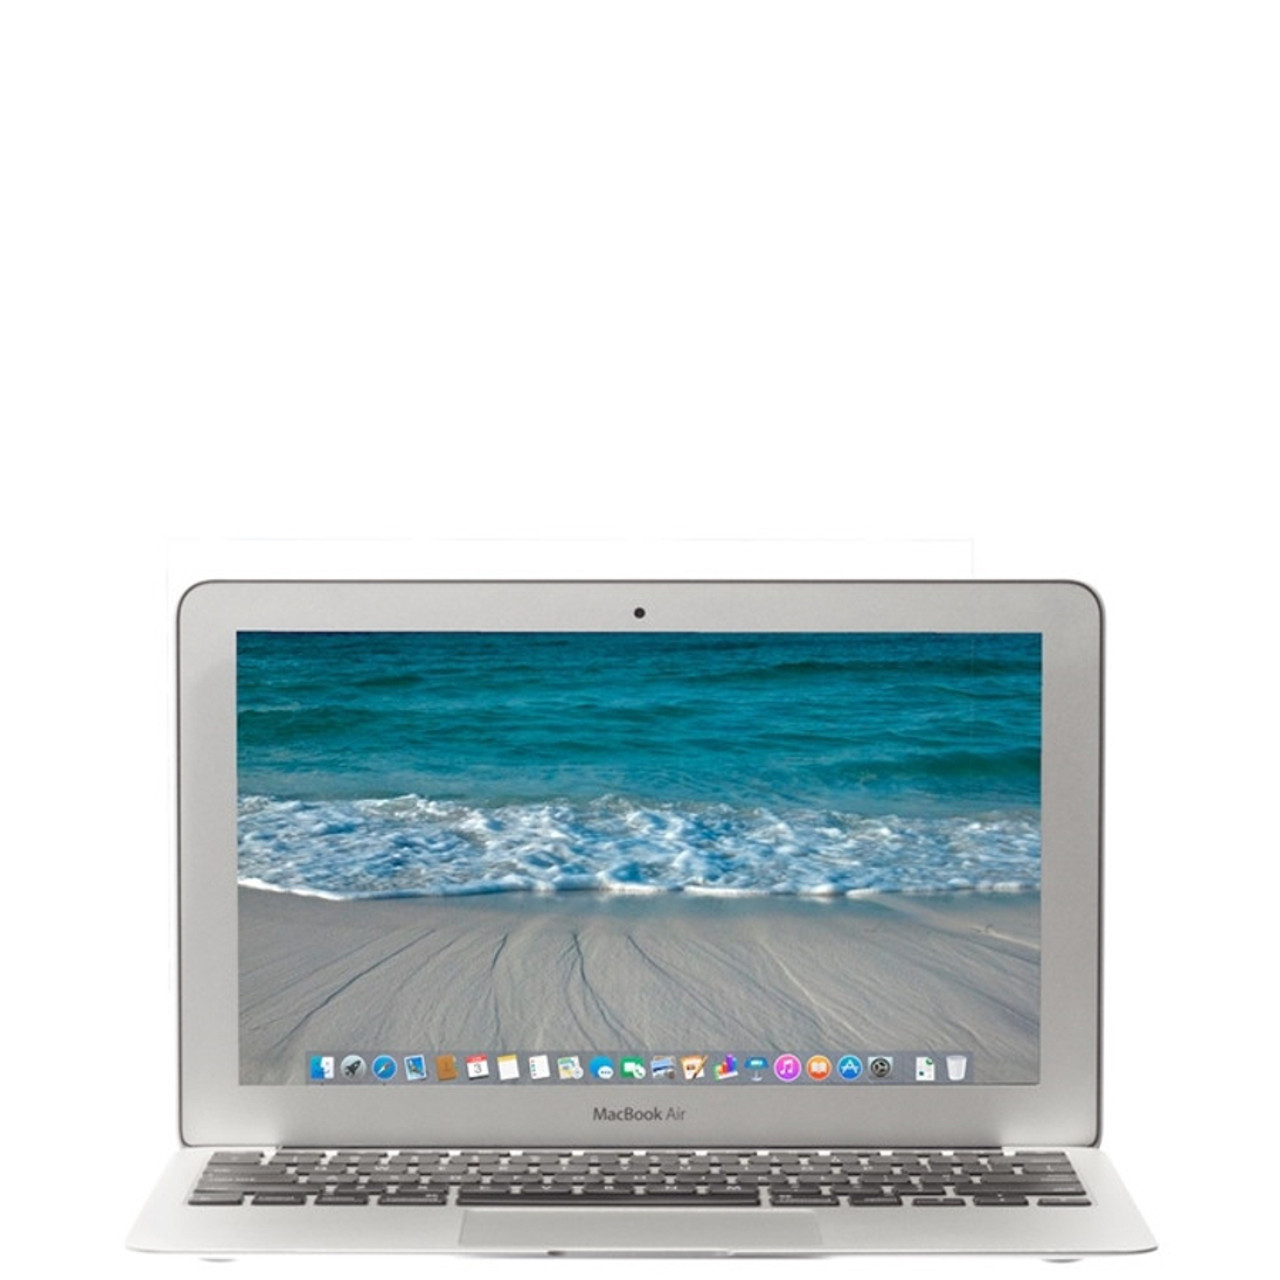 Apple MacBook Air 11-inch 1.6GHz Core 2 Duo (Late 2010) MC506LL/A